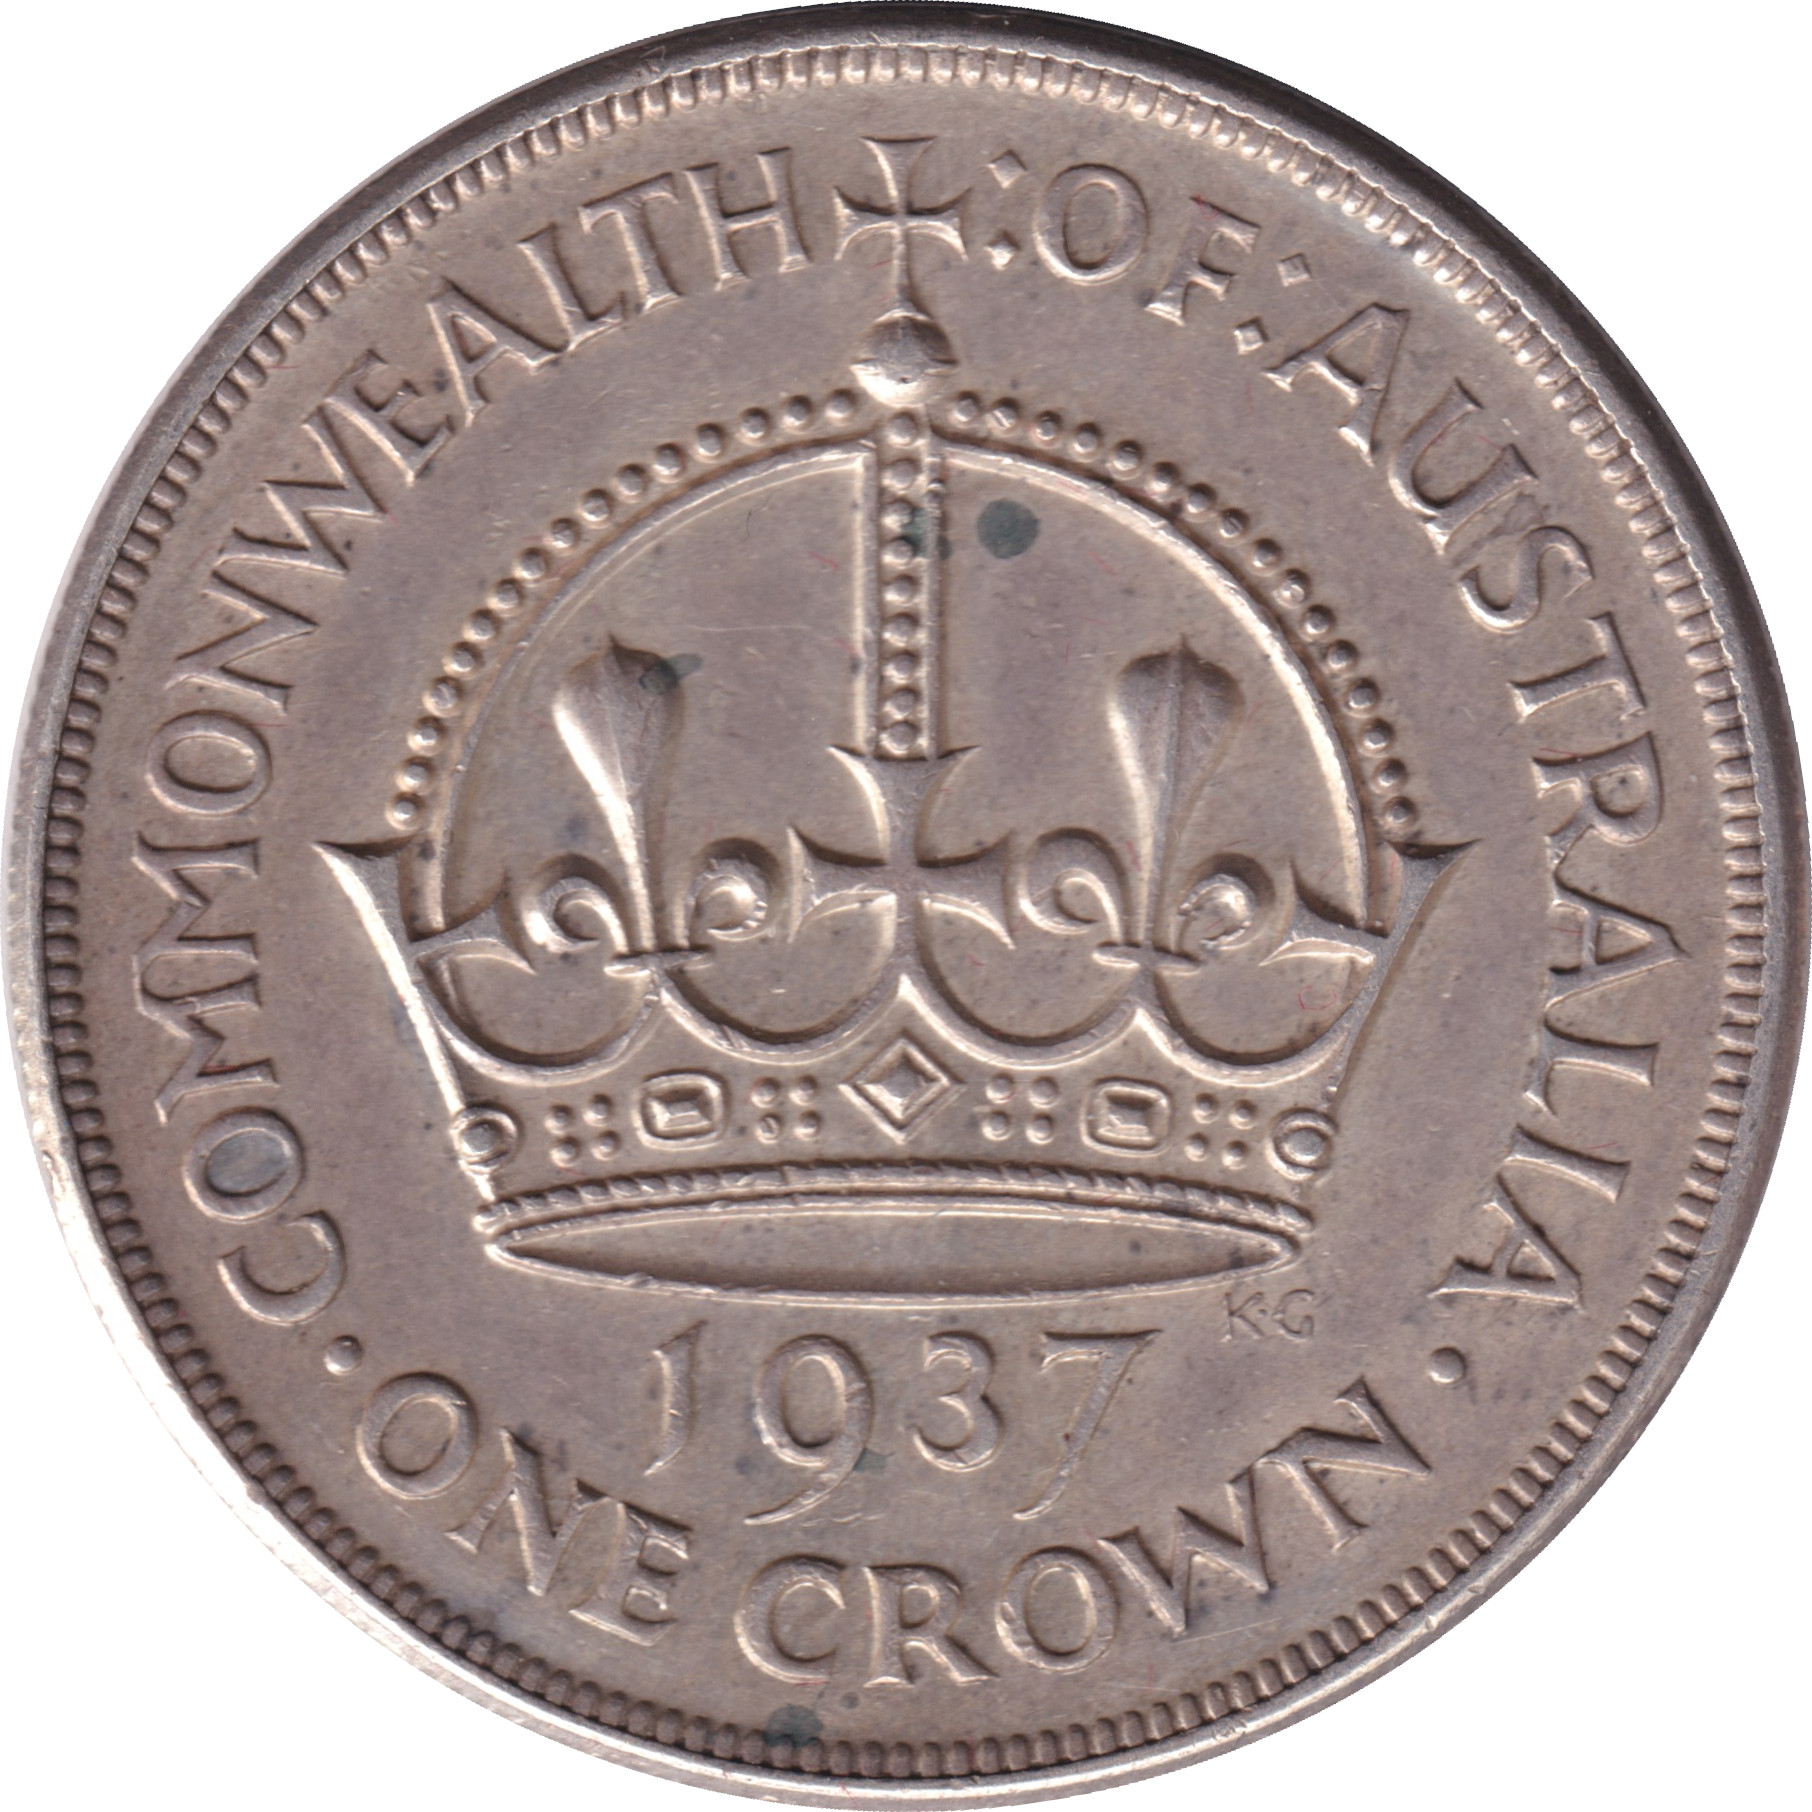 1 crown - George VI